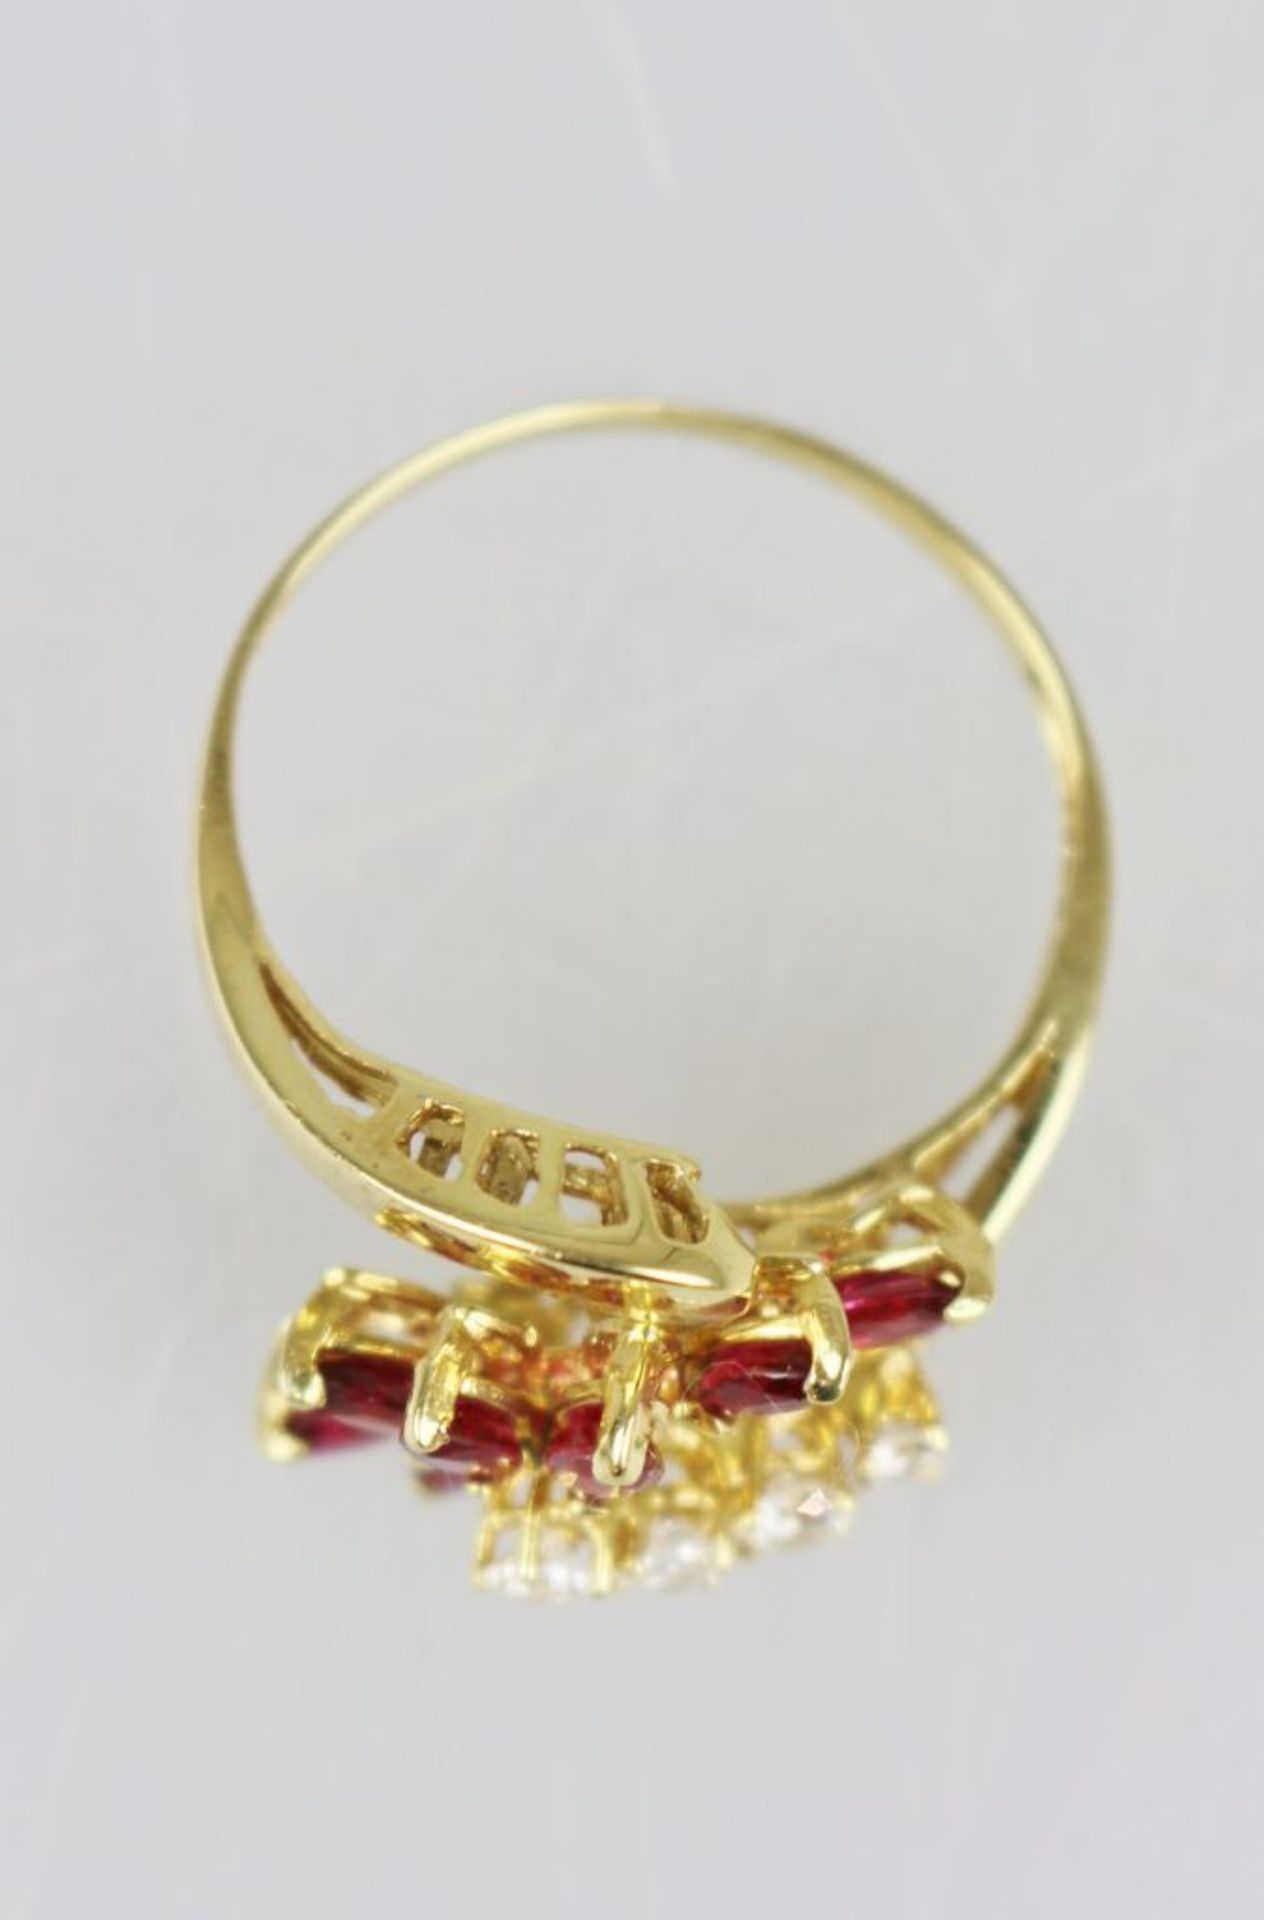 Rubin-Brillant-Ring, 750er Gelbgold, filigrane Ringschiene, diese vorne unterbrochen, an den - Bild 2 aus 3